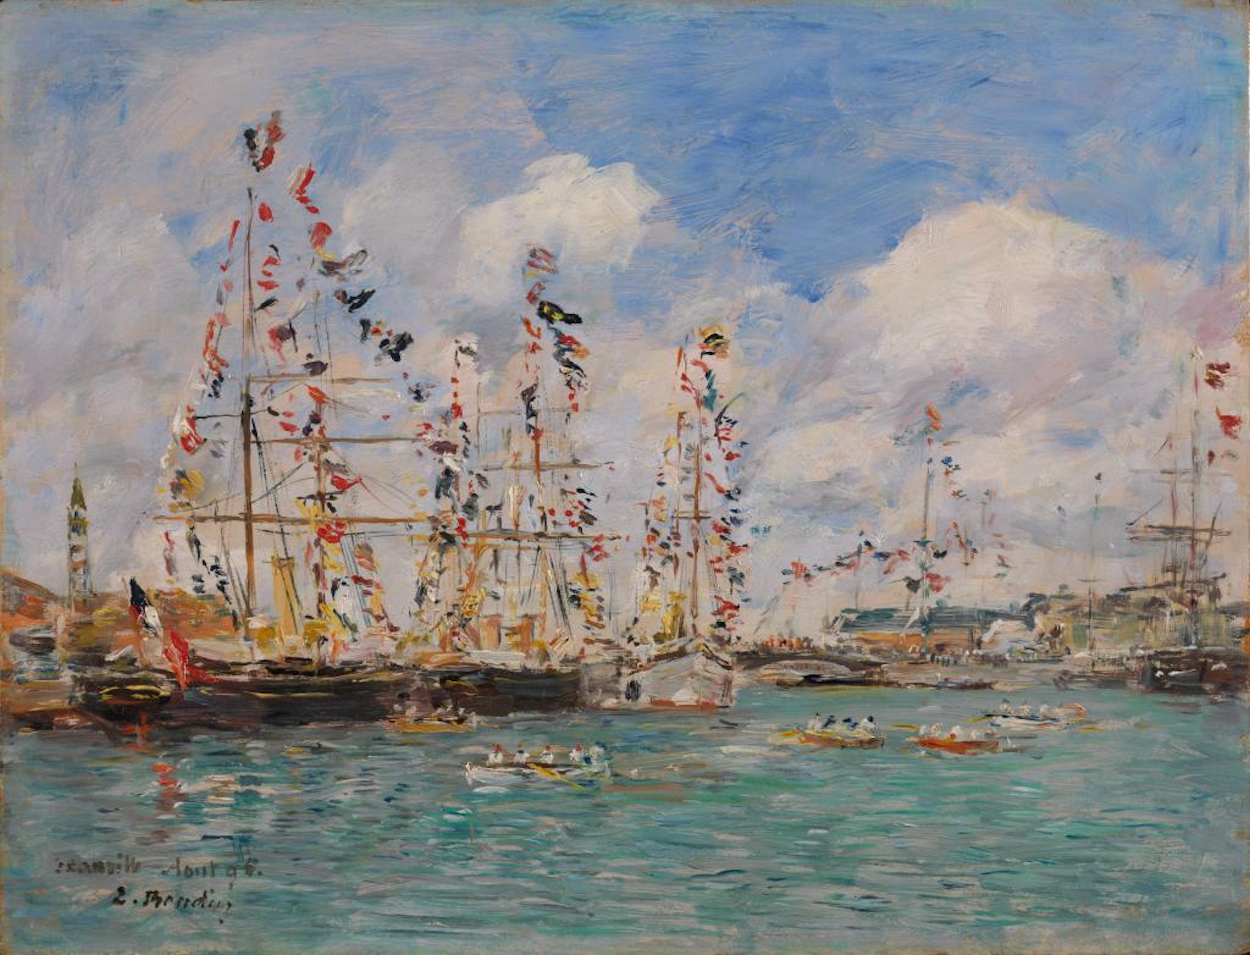 Botes decorados con banderas en el puerto de Deauville by Eugène Boudin - 1895 - 26.67 x 34.93 cm Museo Nelson-Atkins